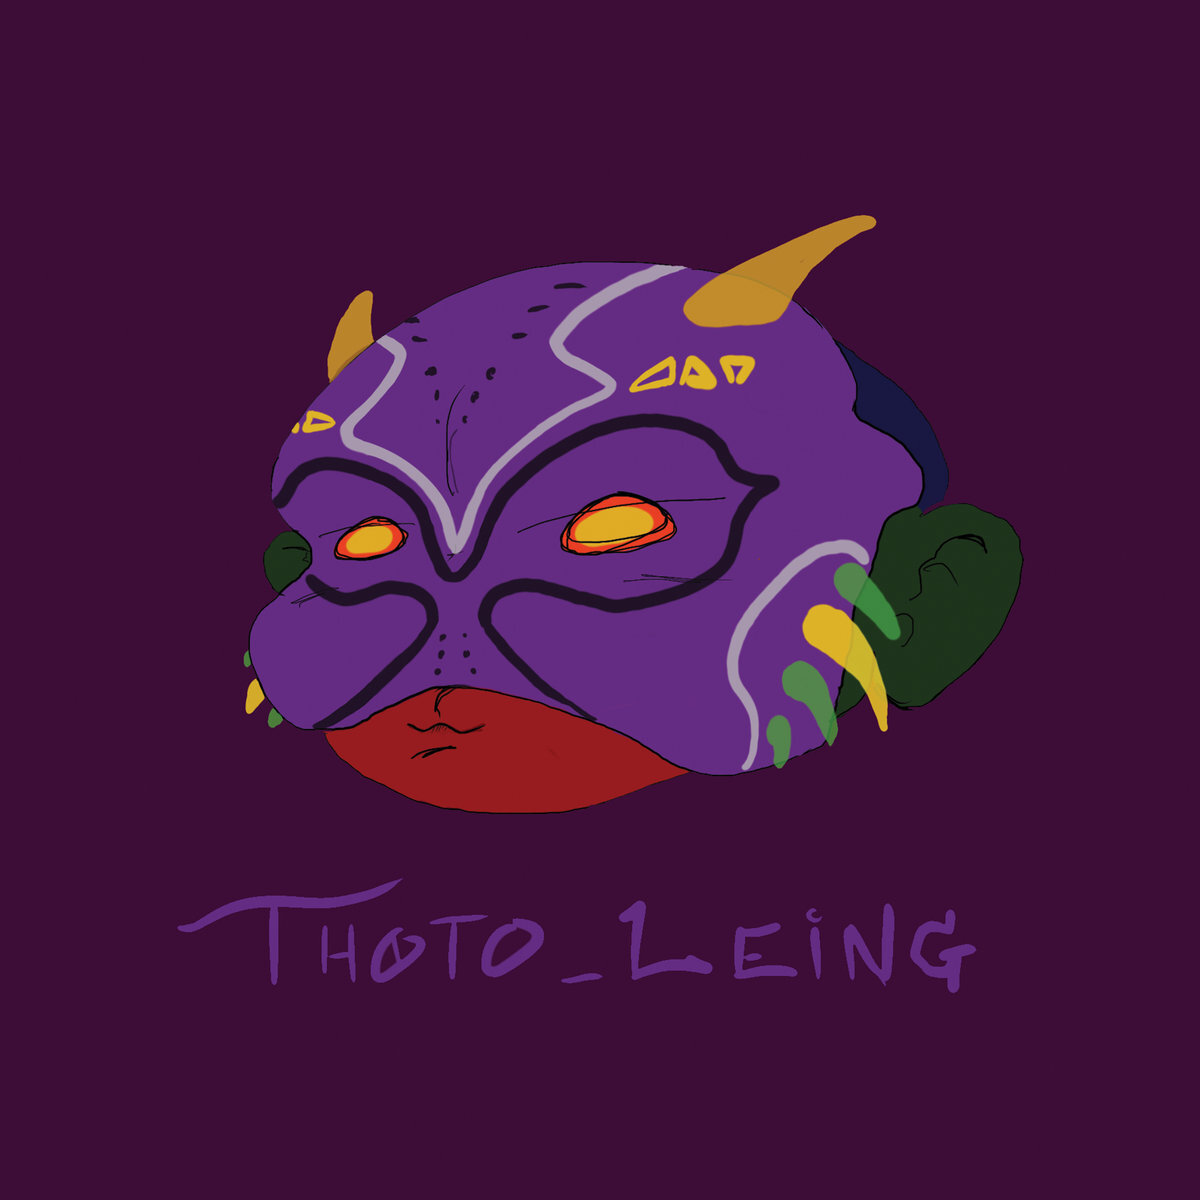 * Thoto_Leing - Termina 